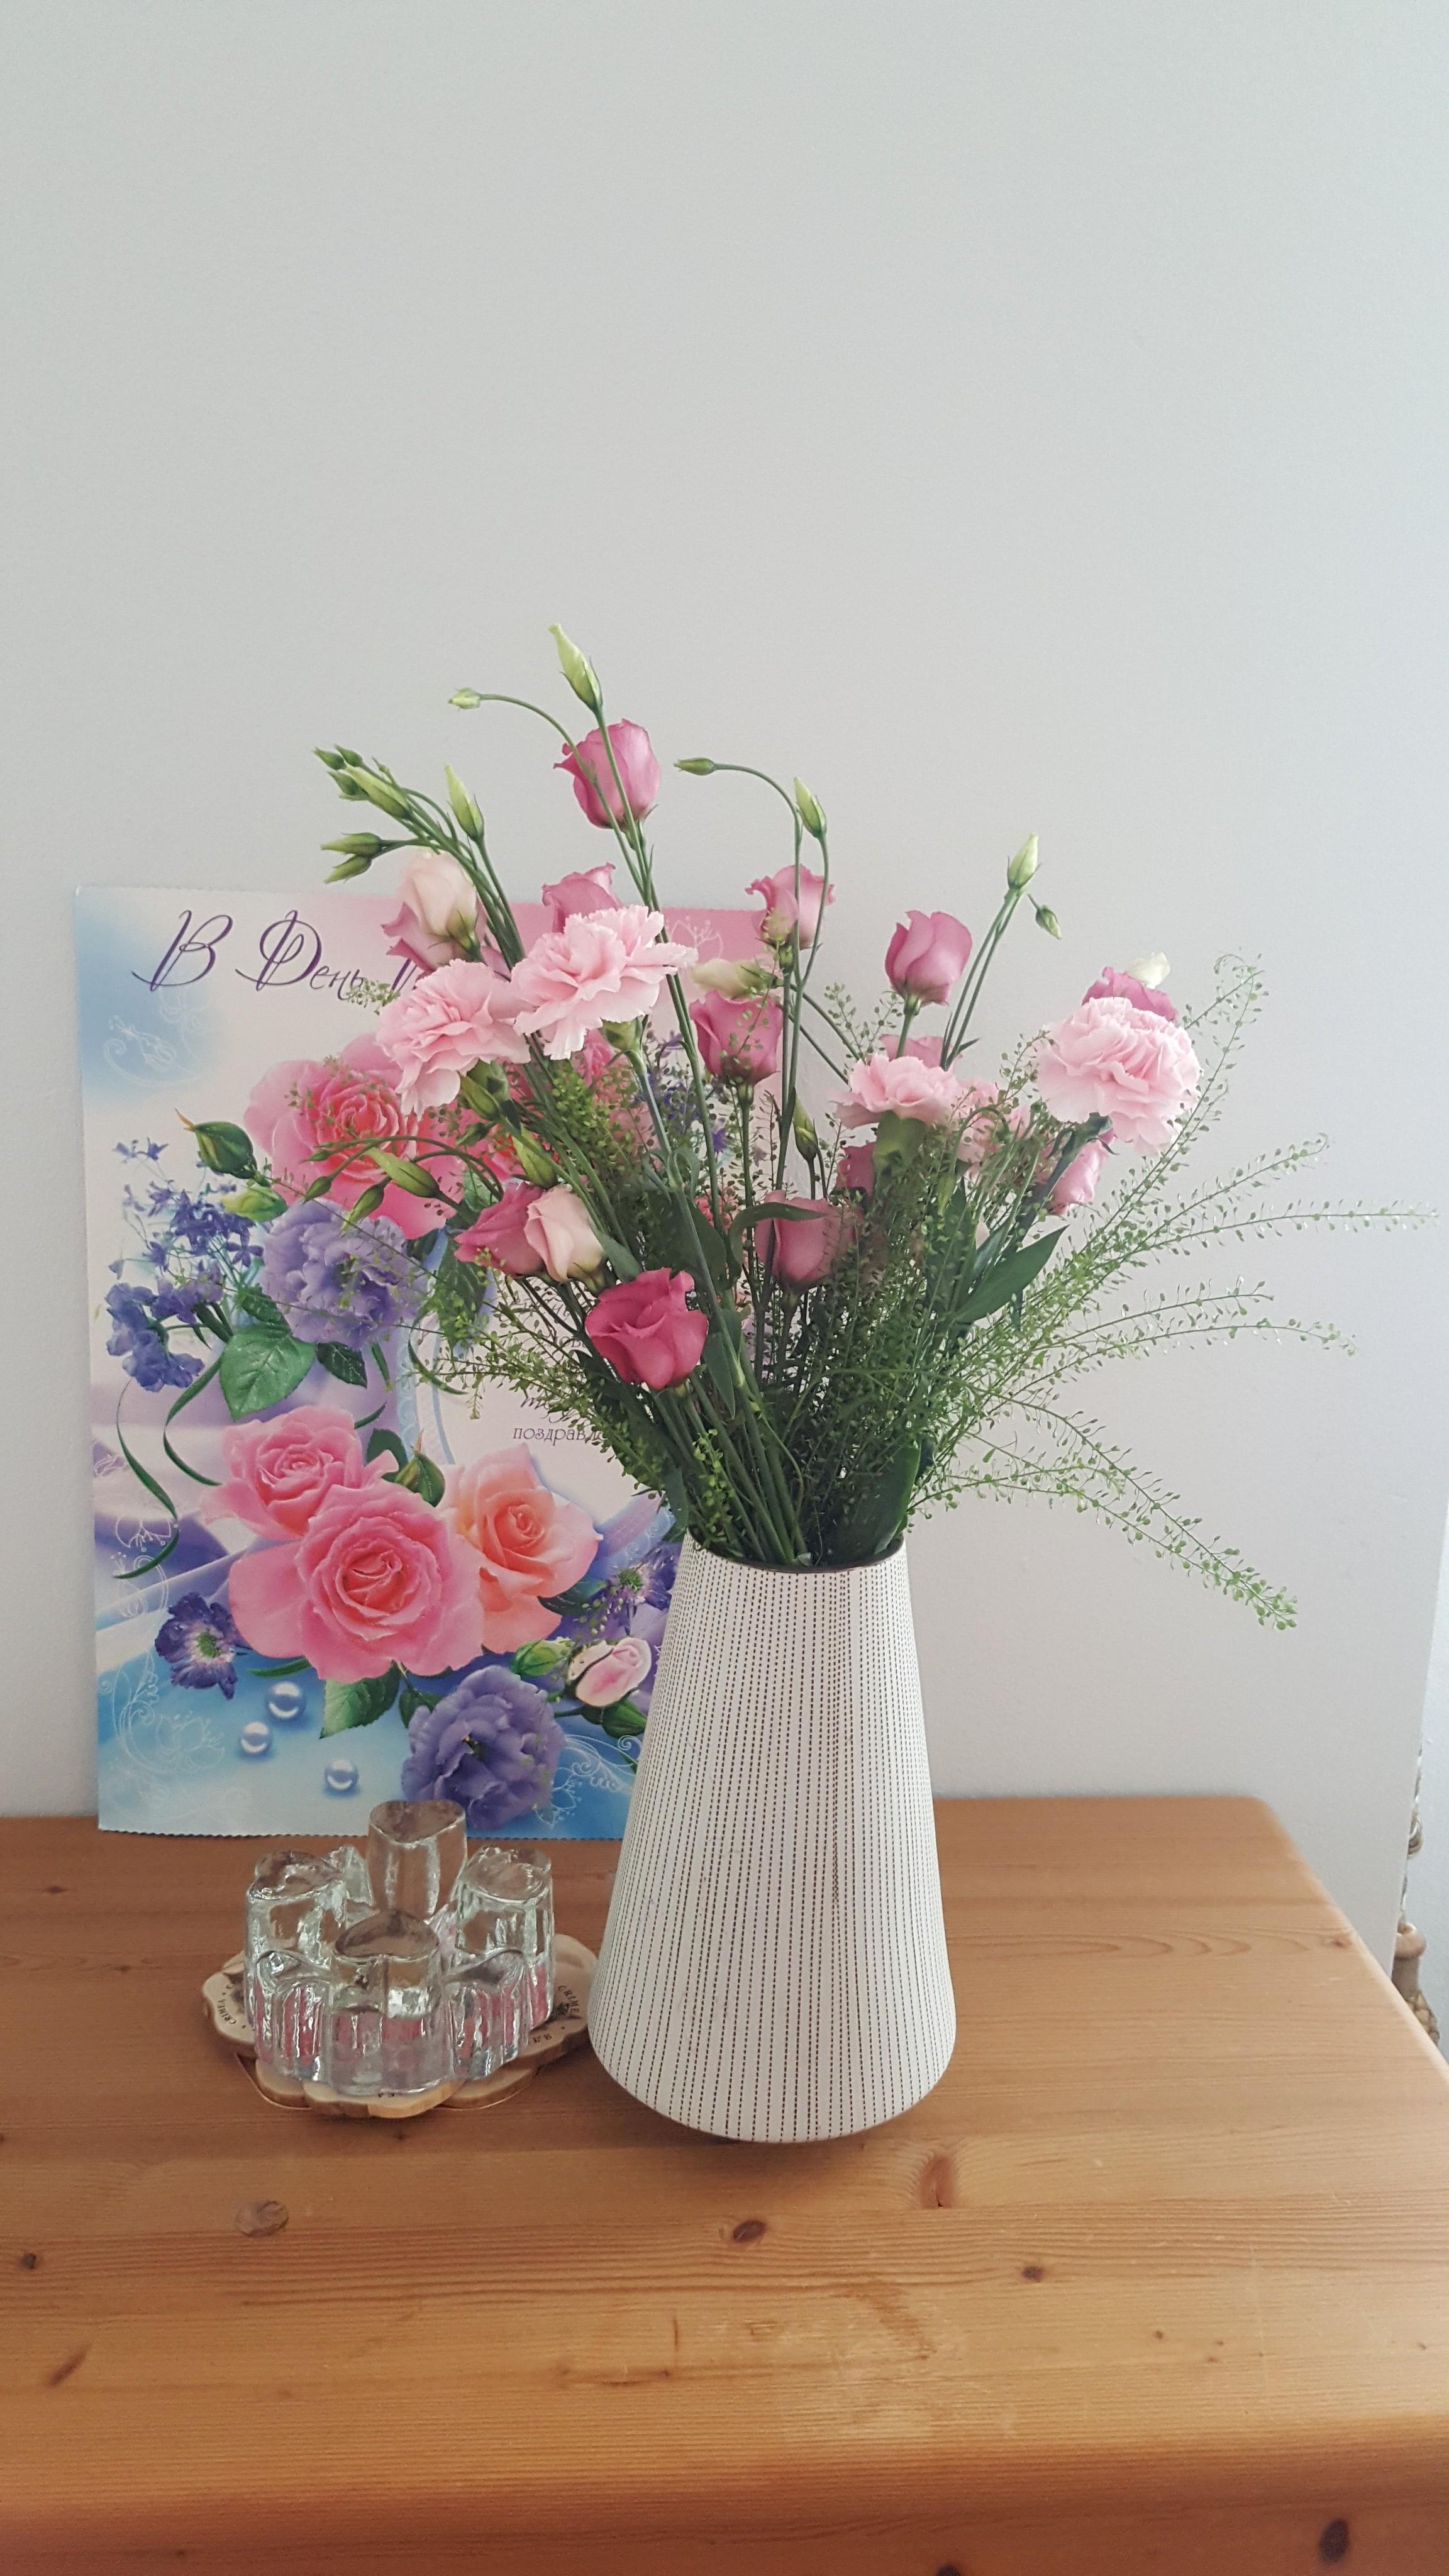 Vielen Dank für die #blumen 💐🍀🌺 #flowers 😍💖